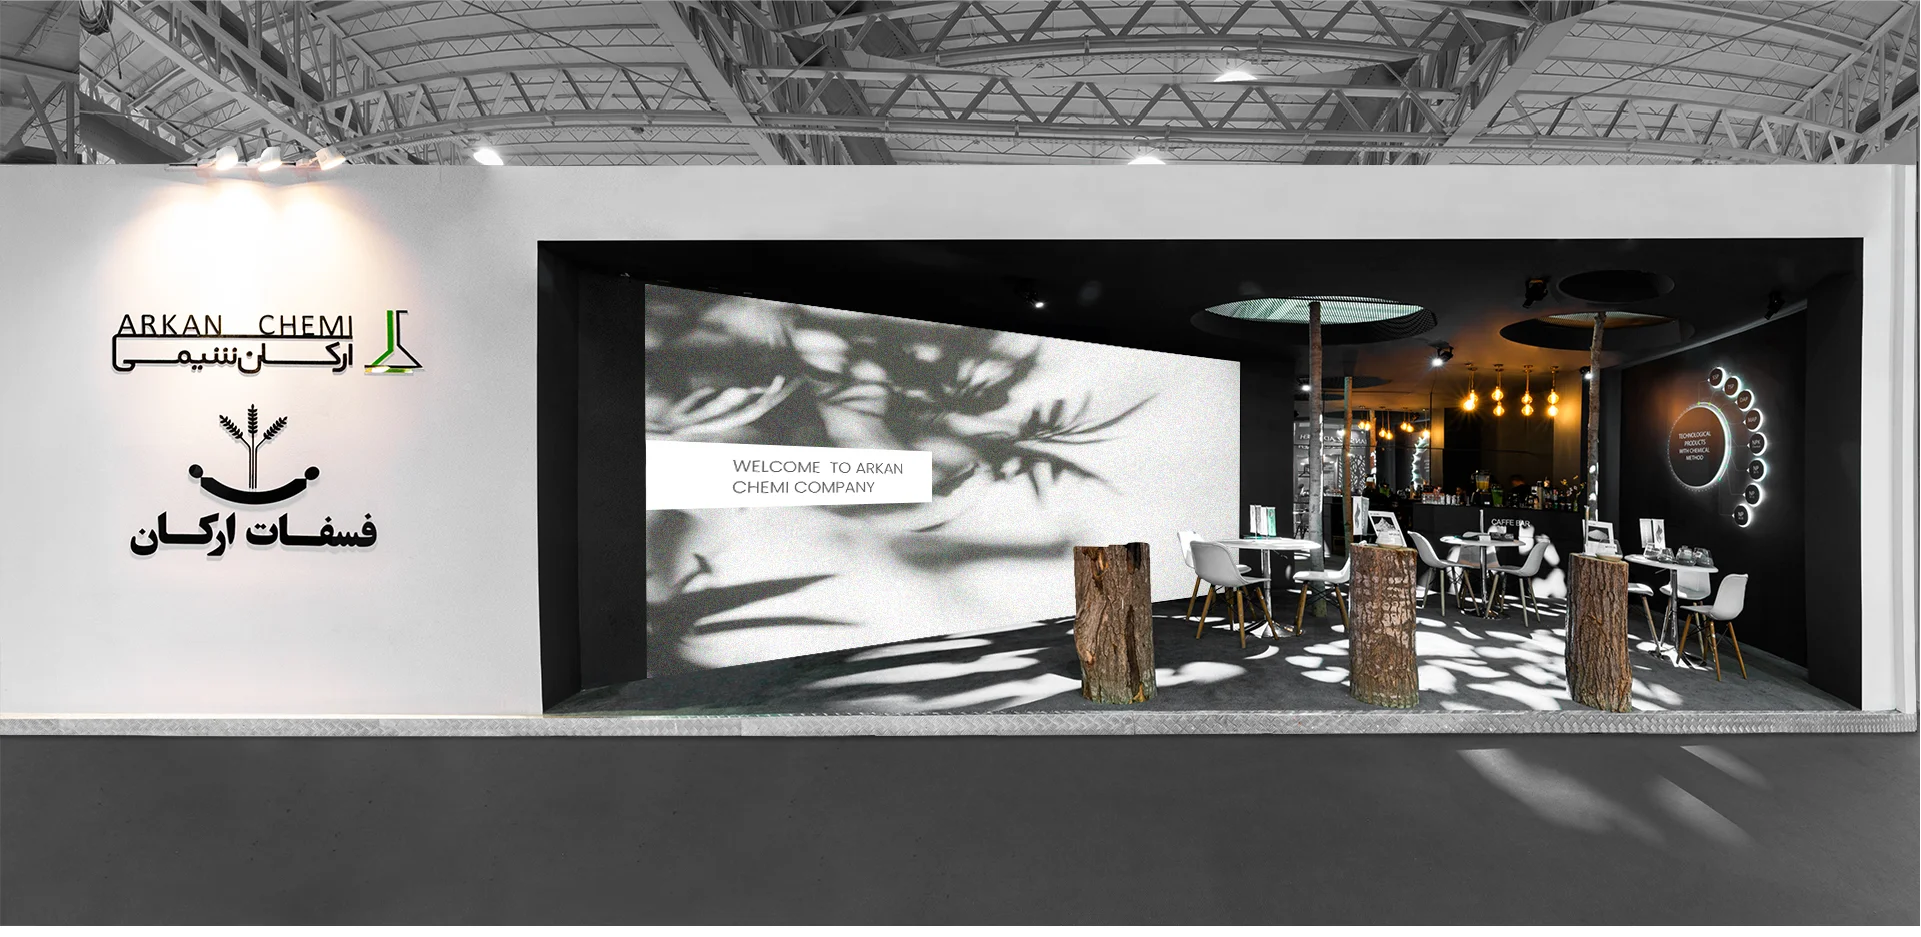   .-06 شرکت غرفه سازی آمیتیس طراحی نمایشگاهی ارکان شیمی جنوب نمایشگاه ماشین آلات کشاورزی 1402 